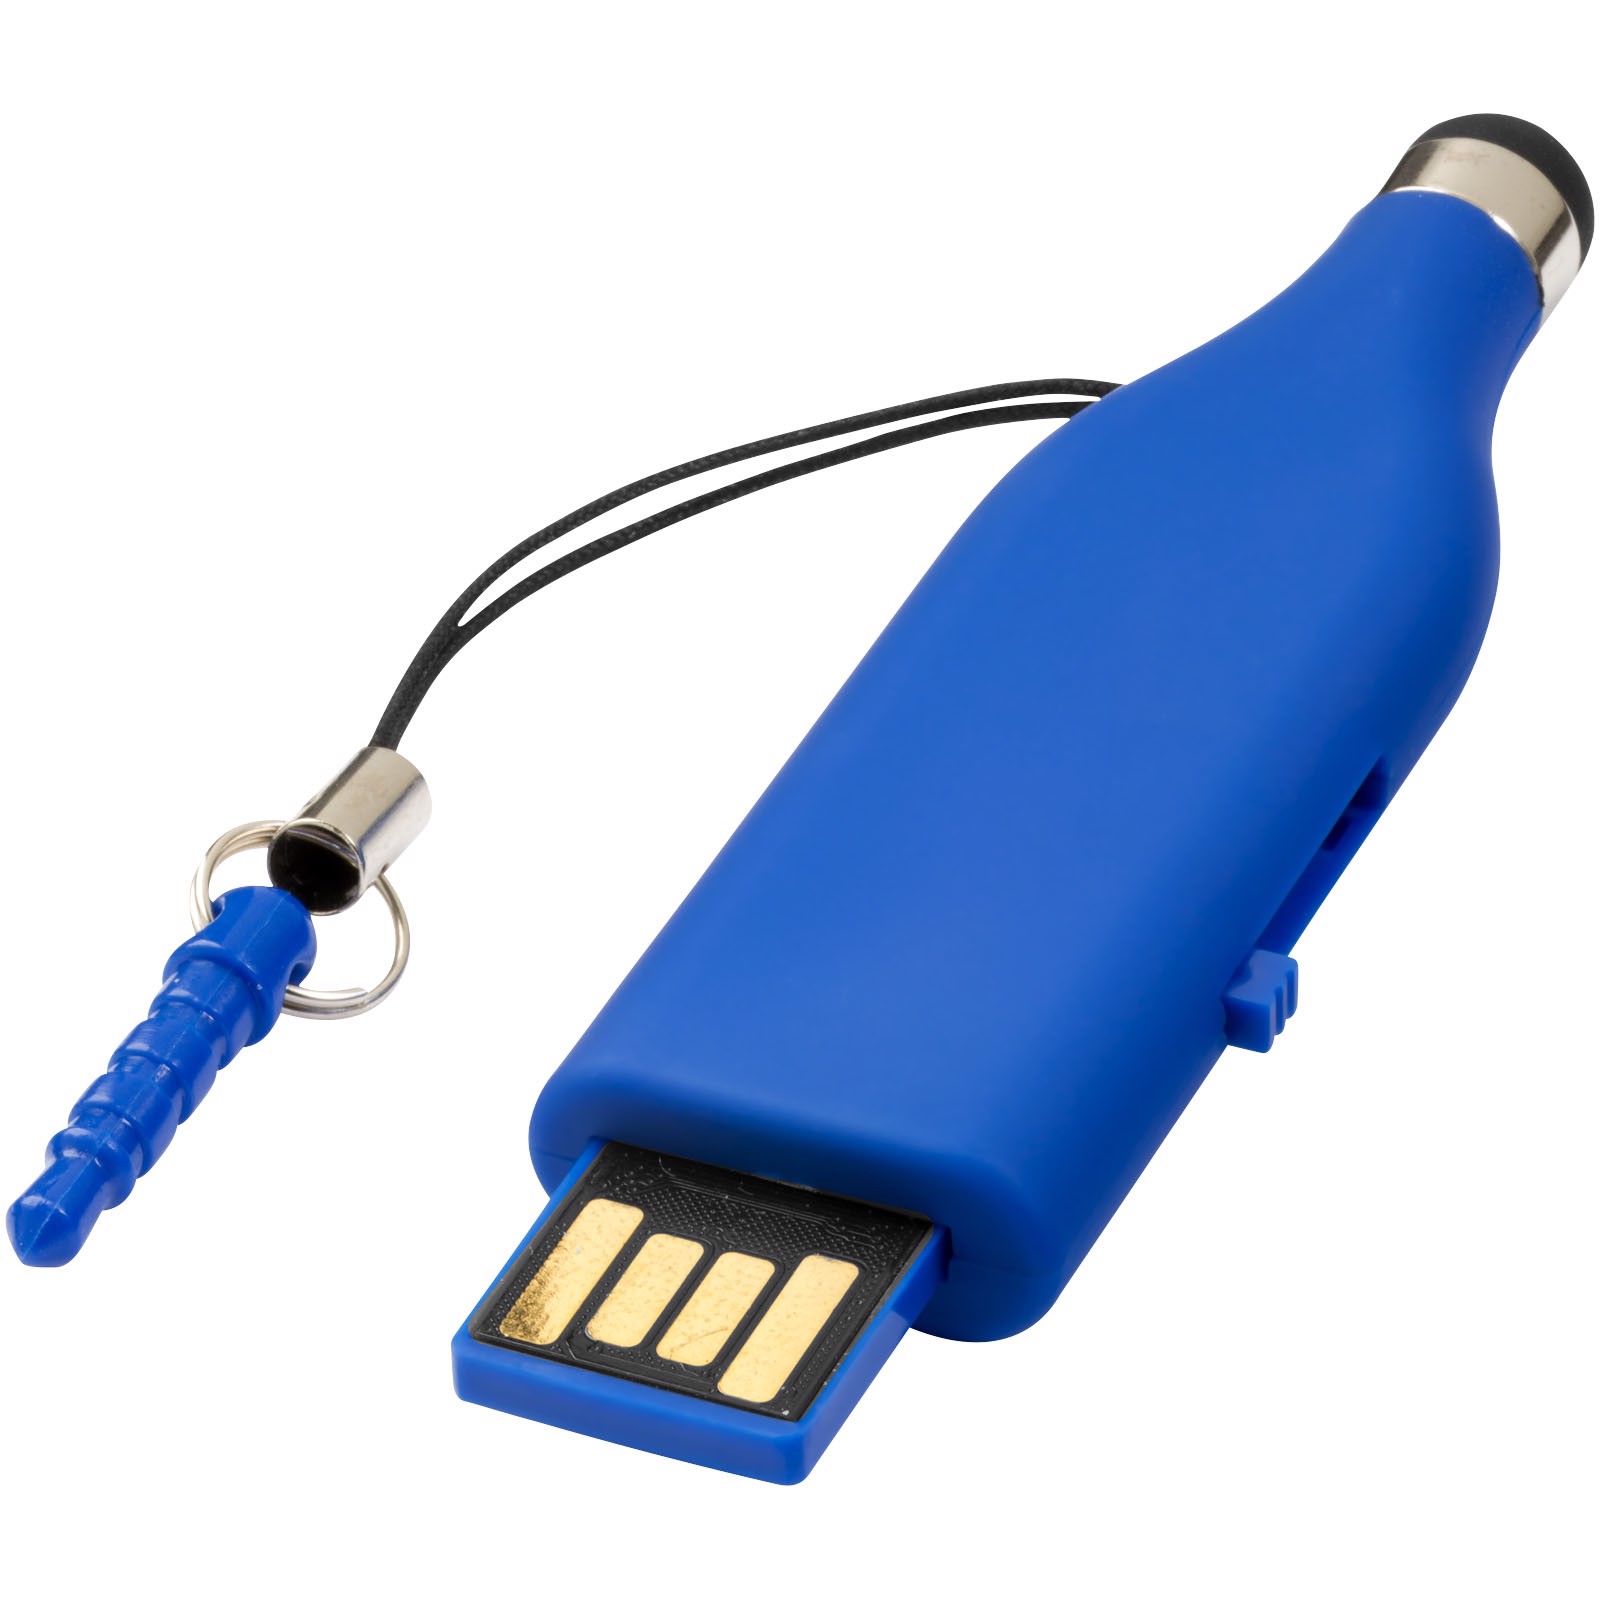 Stylus 2GB USB flash drive - Blue